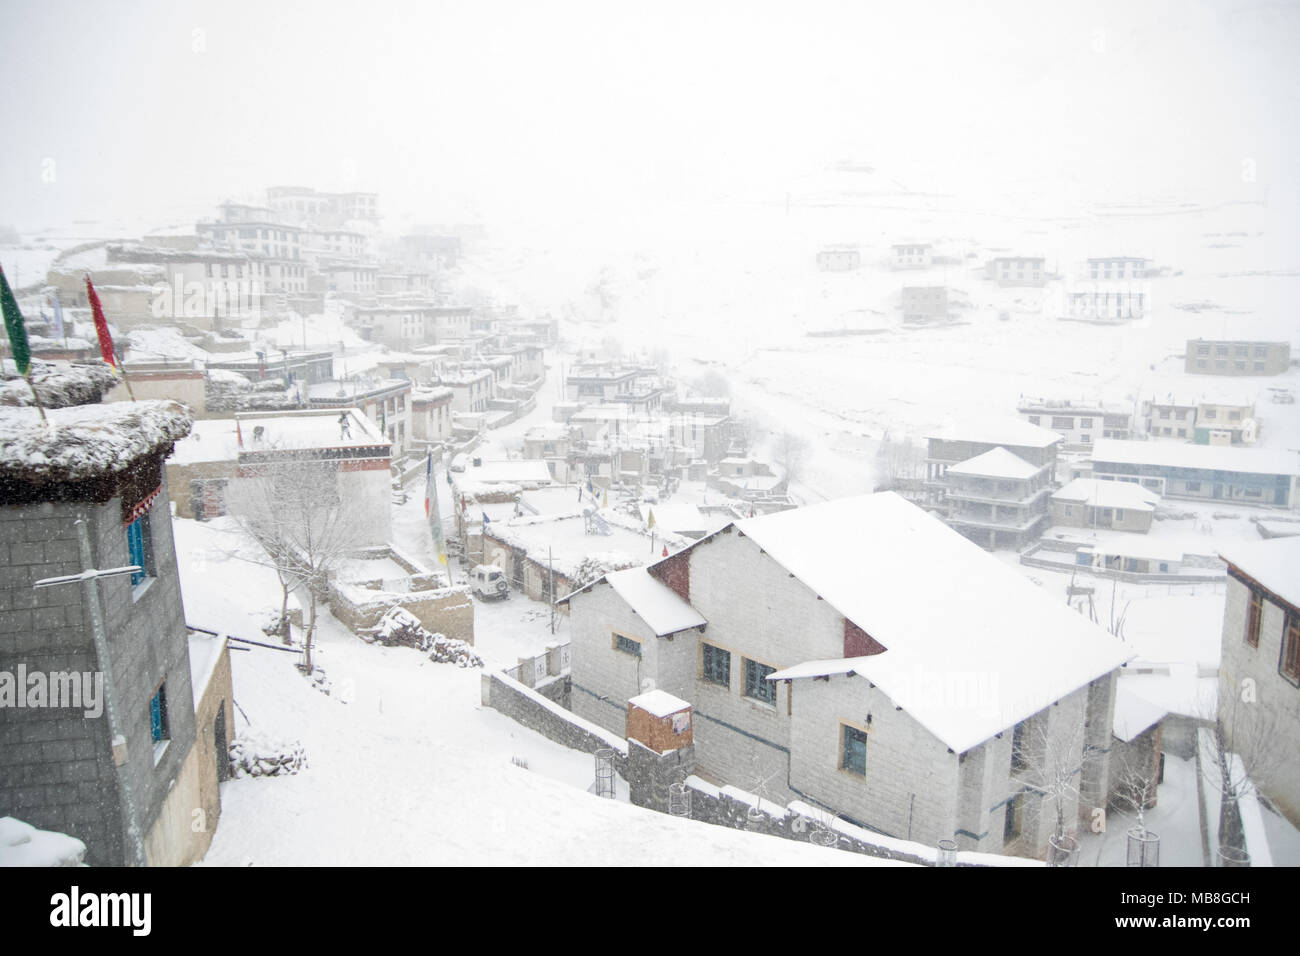 Kibber village in snow Stock Photo